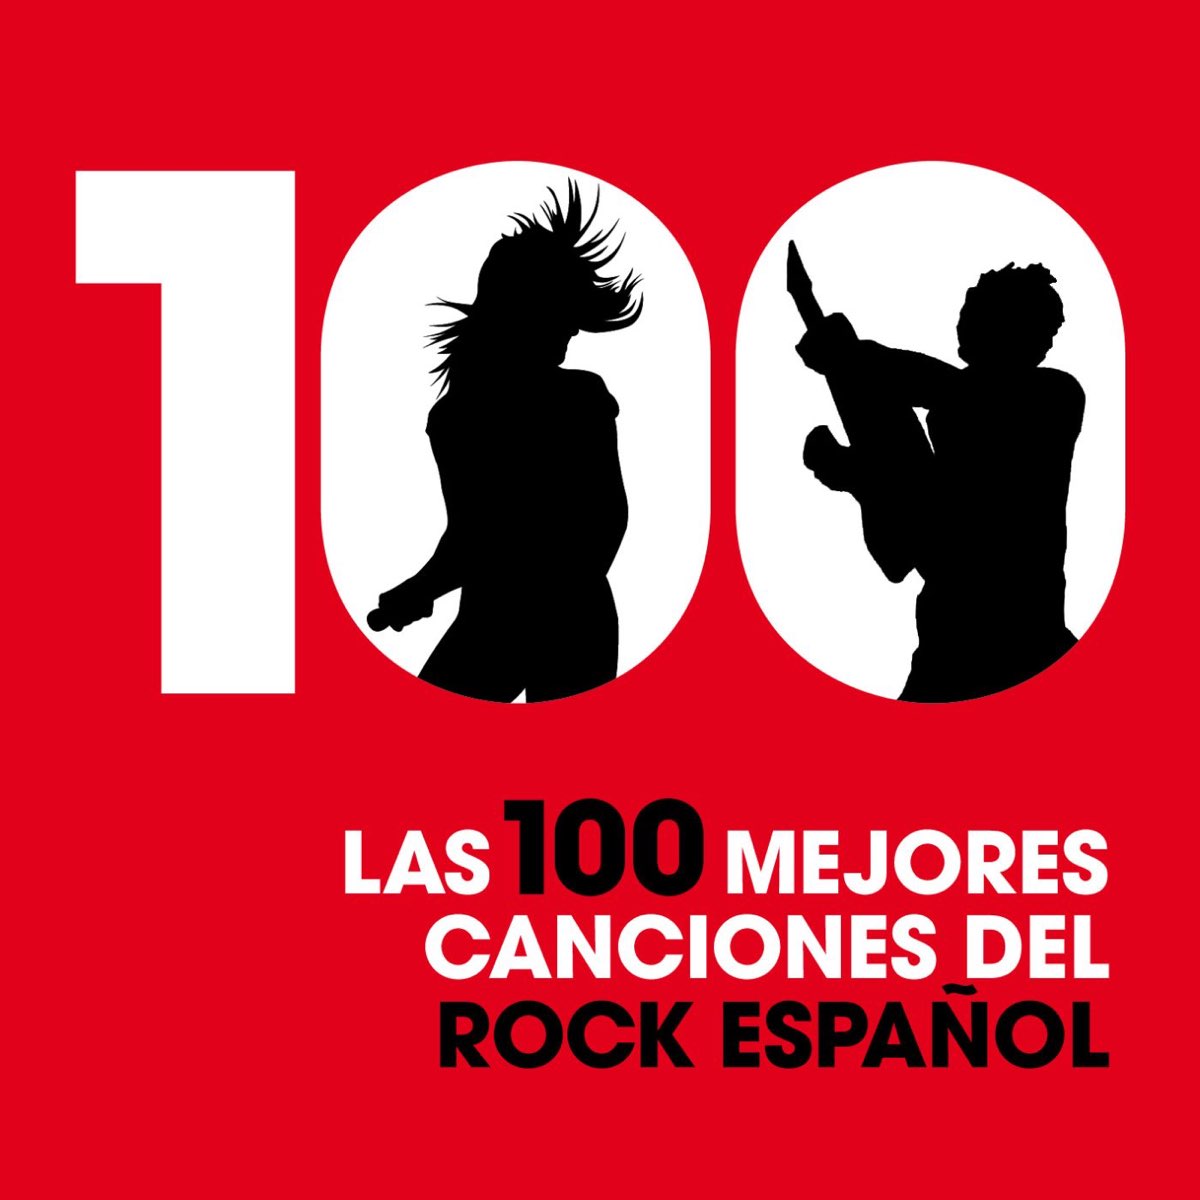 Las 100 Mejores Canciones del Rock Español by Various Artists on Apple Music